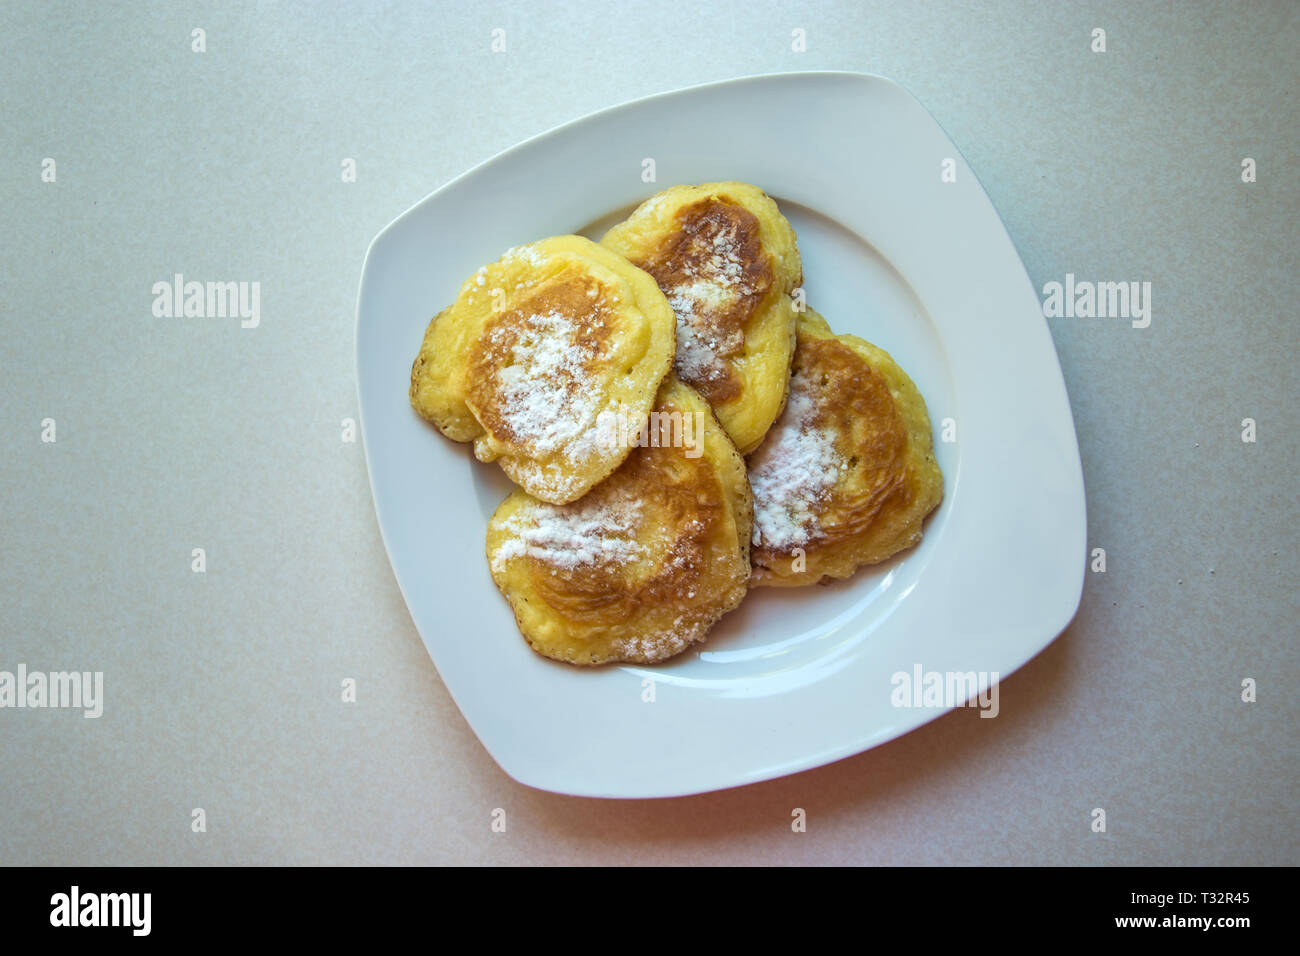 Traditionelle polnische Pfannkuchen auf einer Platte - Süße Pfannkuchen mit Puderzucker bestreut Stockfoto